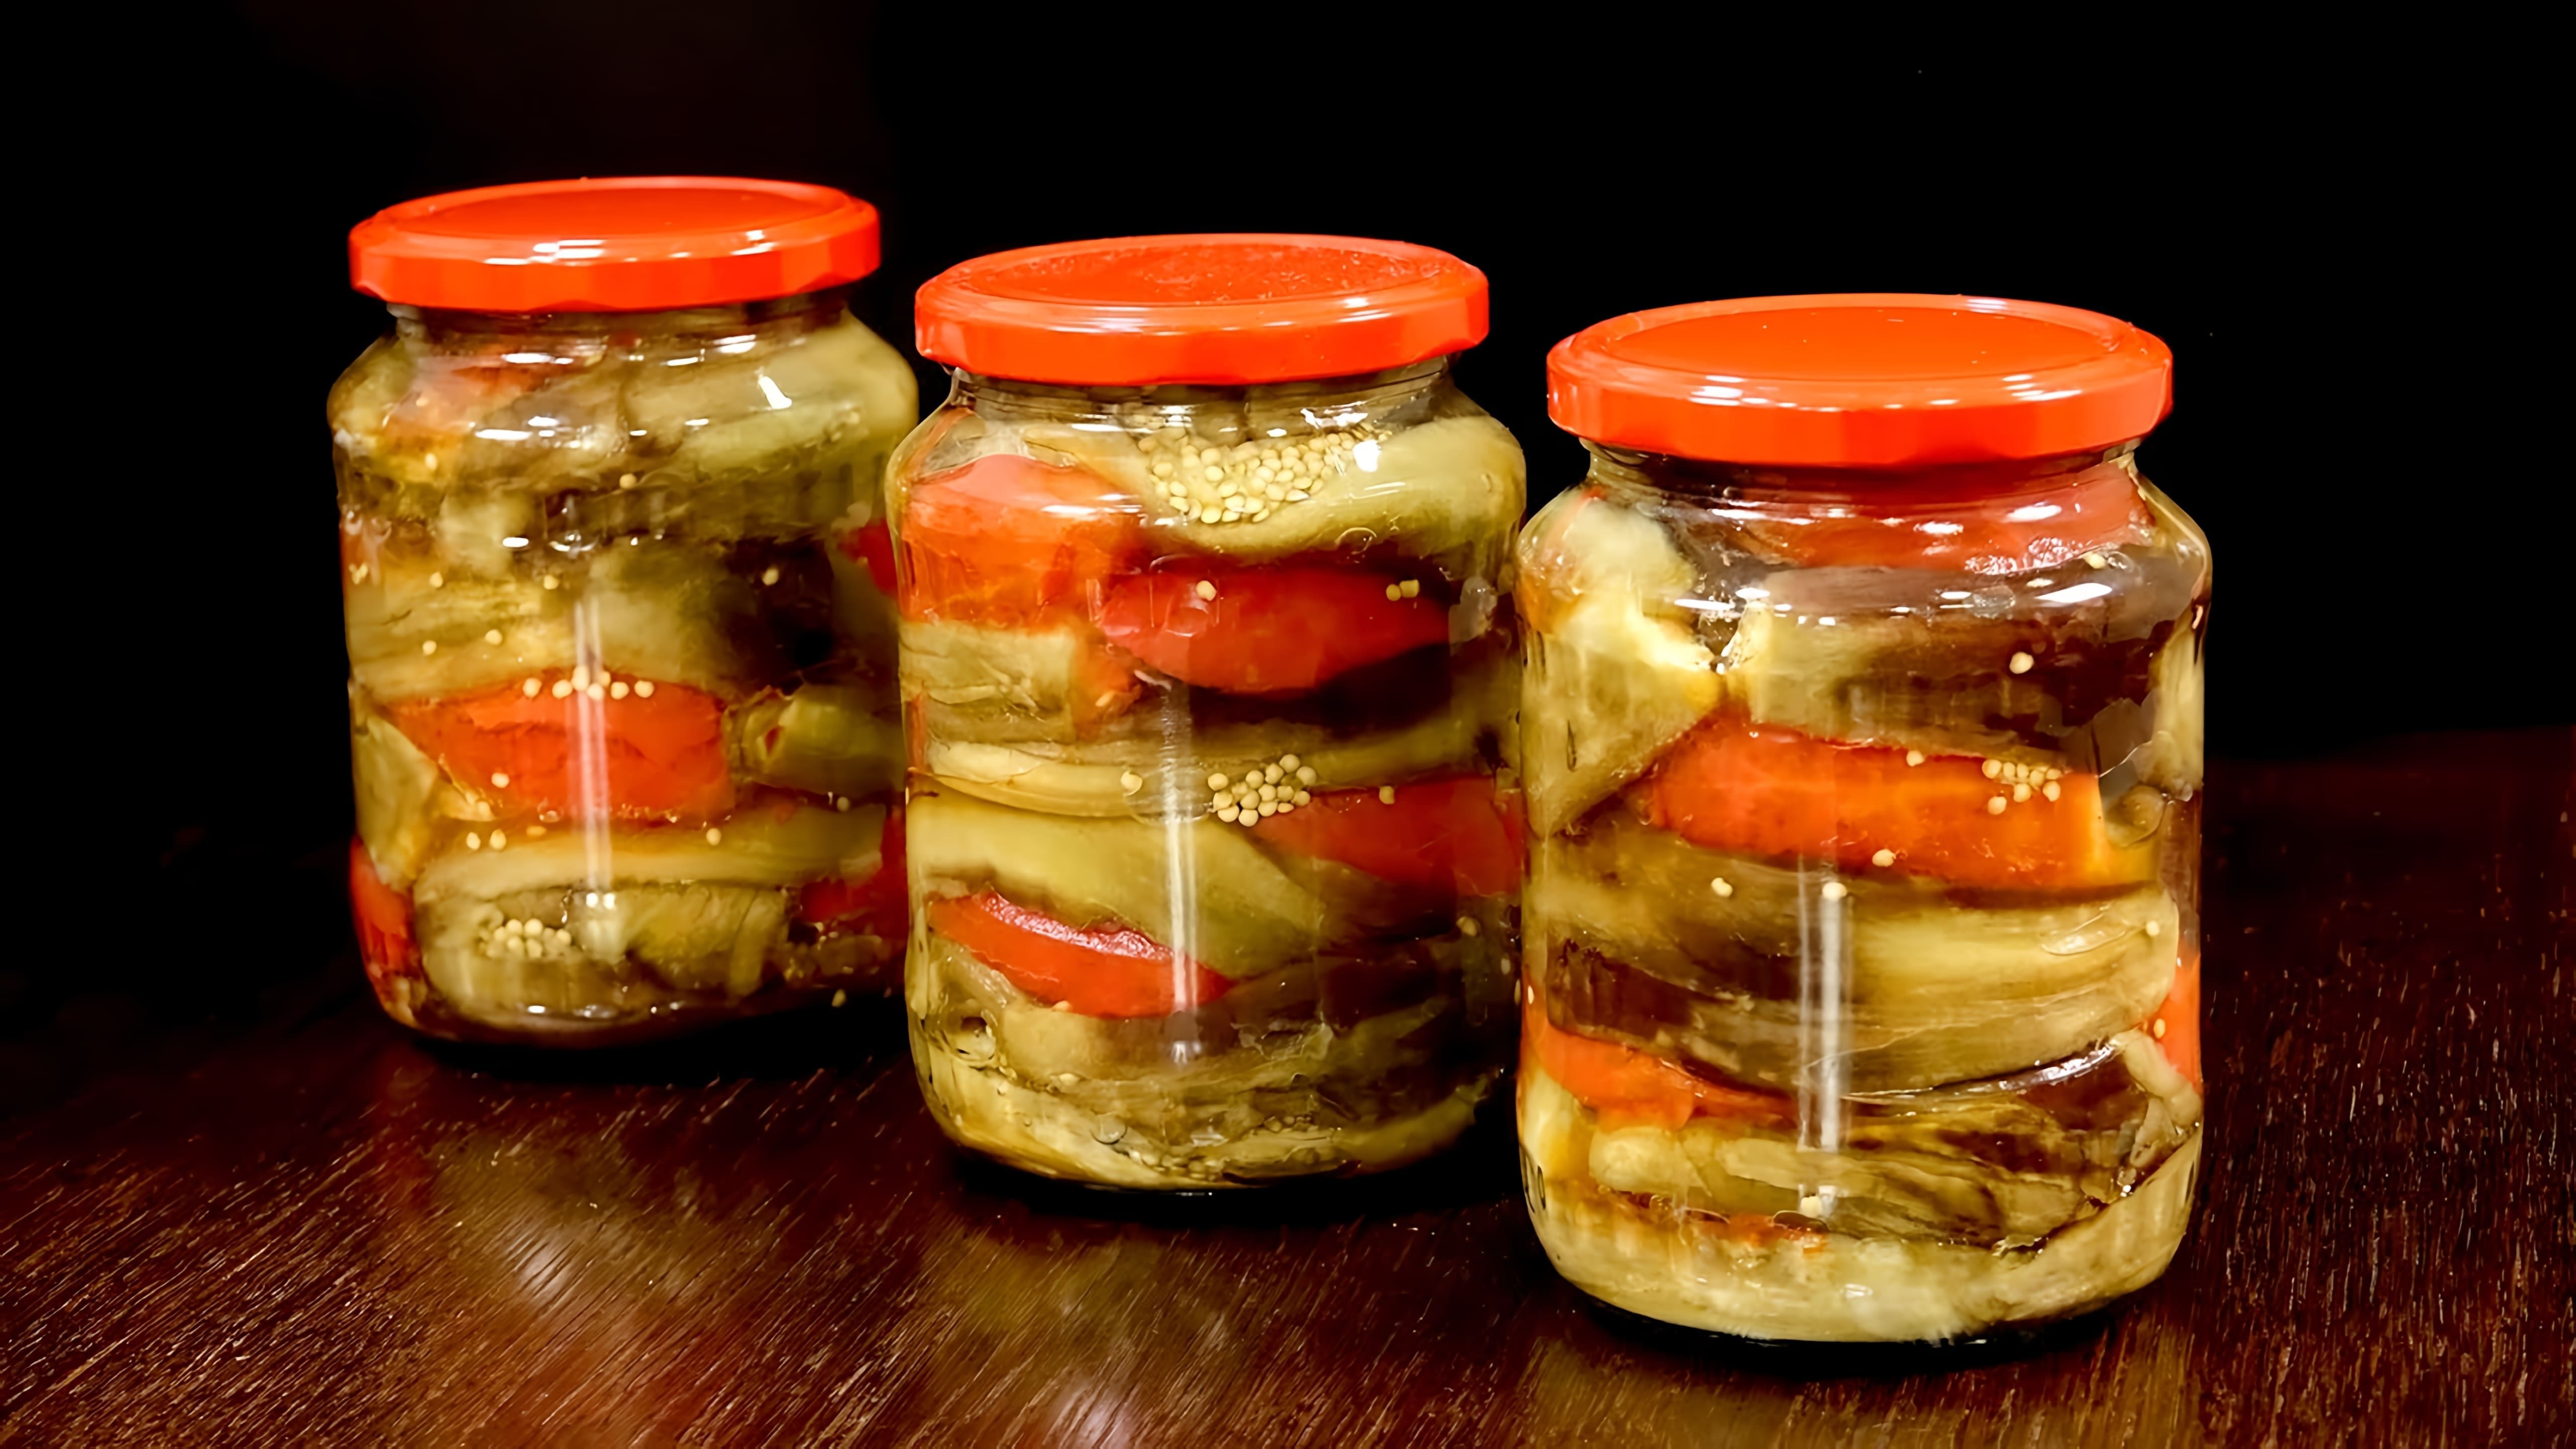 Видео рассматривает три рецепта консервирования баклажанов на зиму - запеченные баклажаны, кавиар/паштет из баклажанов и тушеные баклажаны/соус